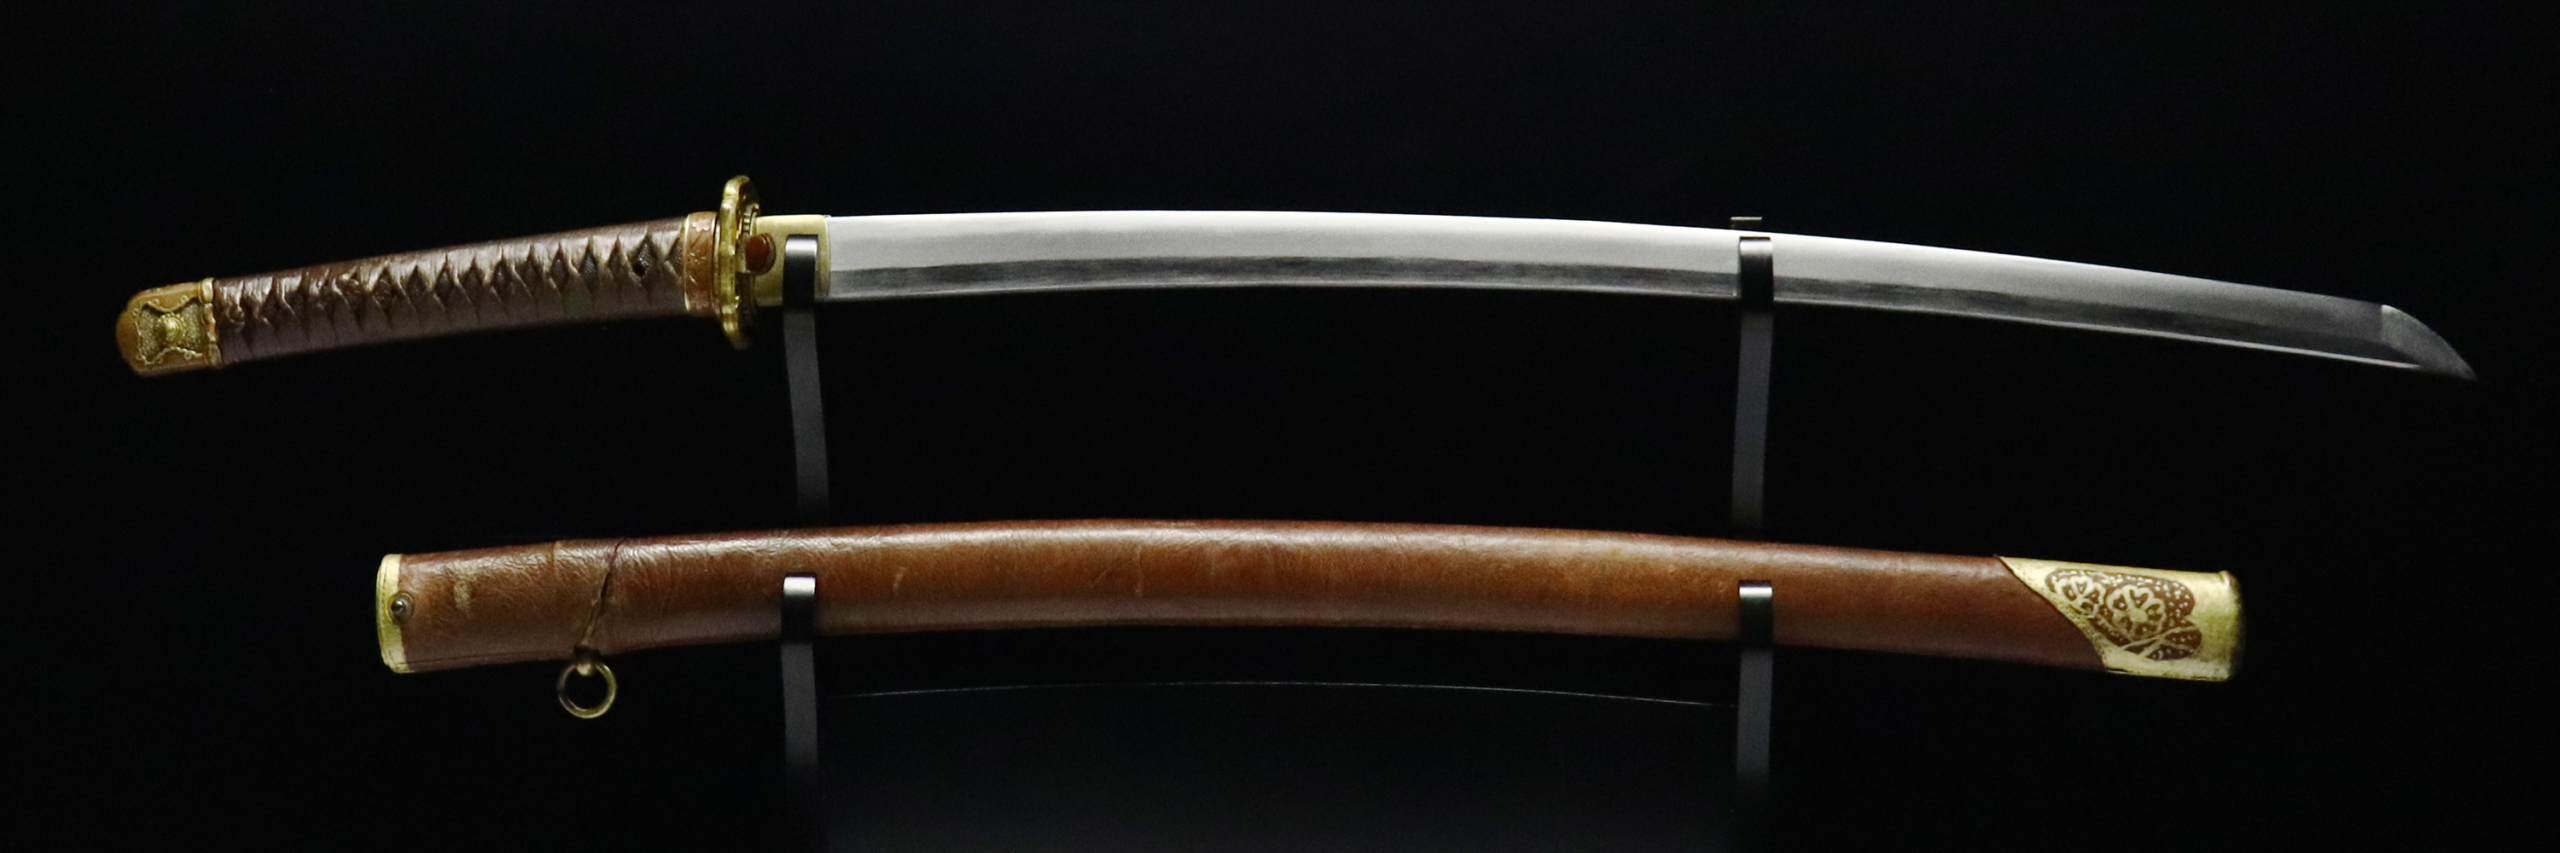 無銘 旧日本陸軍 軍刀 | 日本刀販売の「勇進堂」 | 刀剣・美術刀剣・刀 